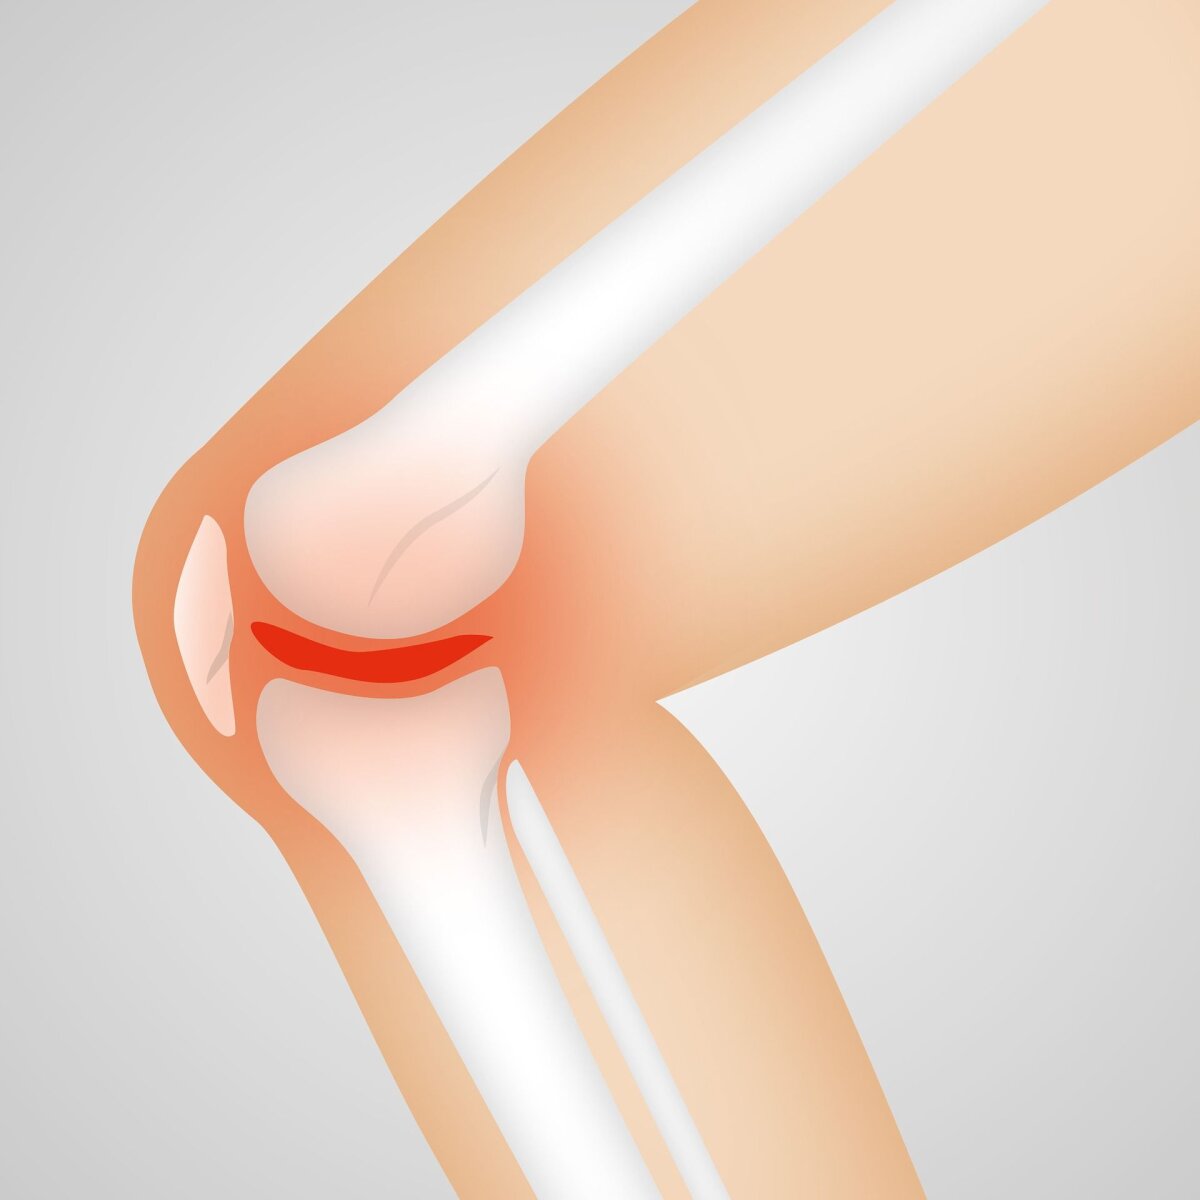 arthroosi jala pohjused ja ravi salv ola liigese artroosist